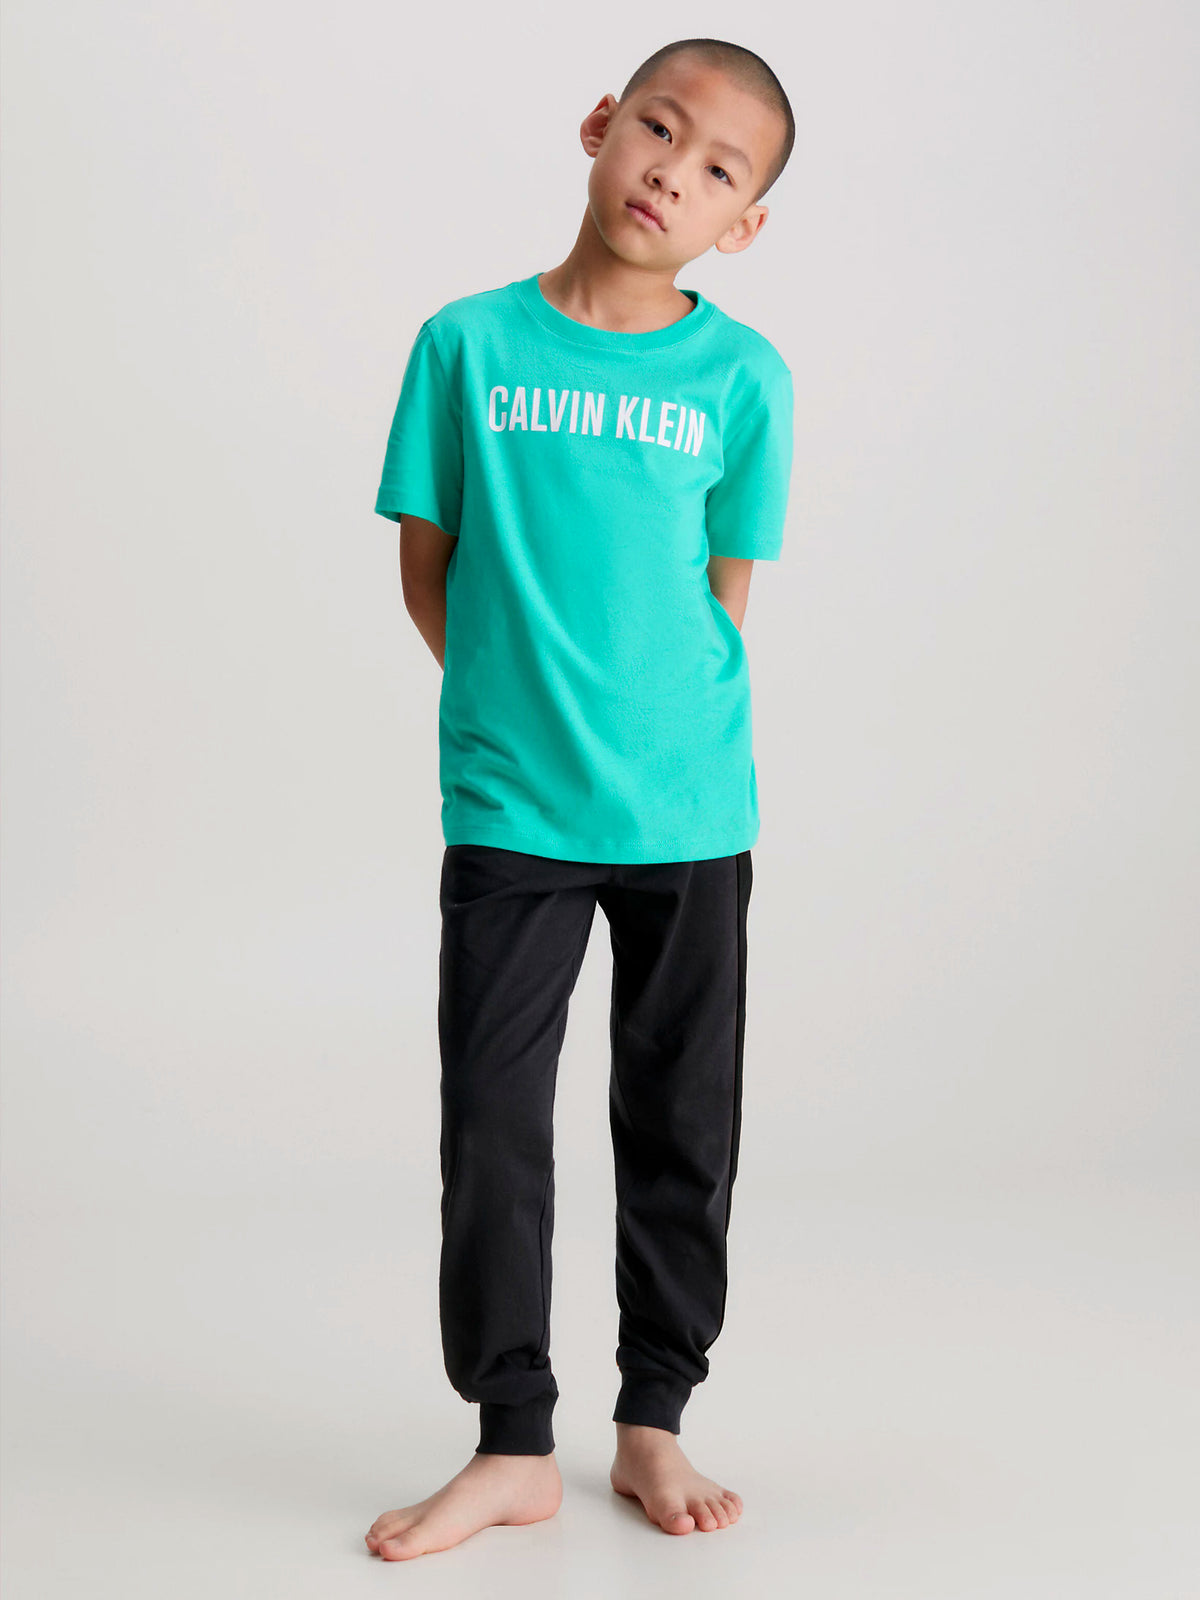 Calvin Klein Boys Intense Power T-Shirt - 2 Pack, 07, B70B700431, Lightteal/ W/ Boldblue